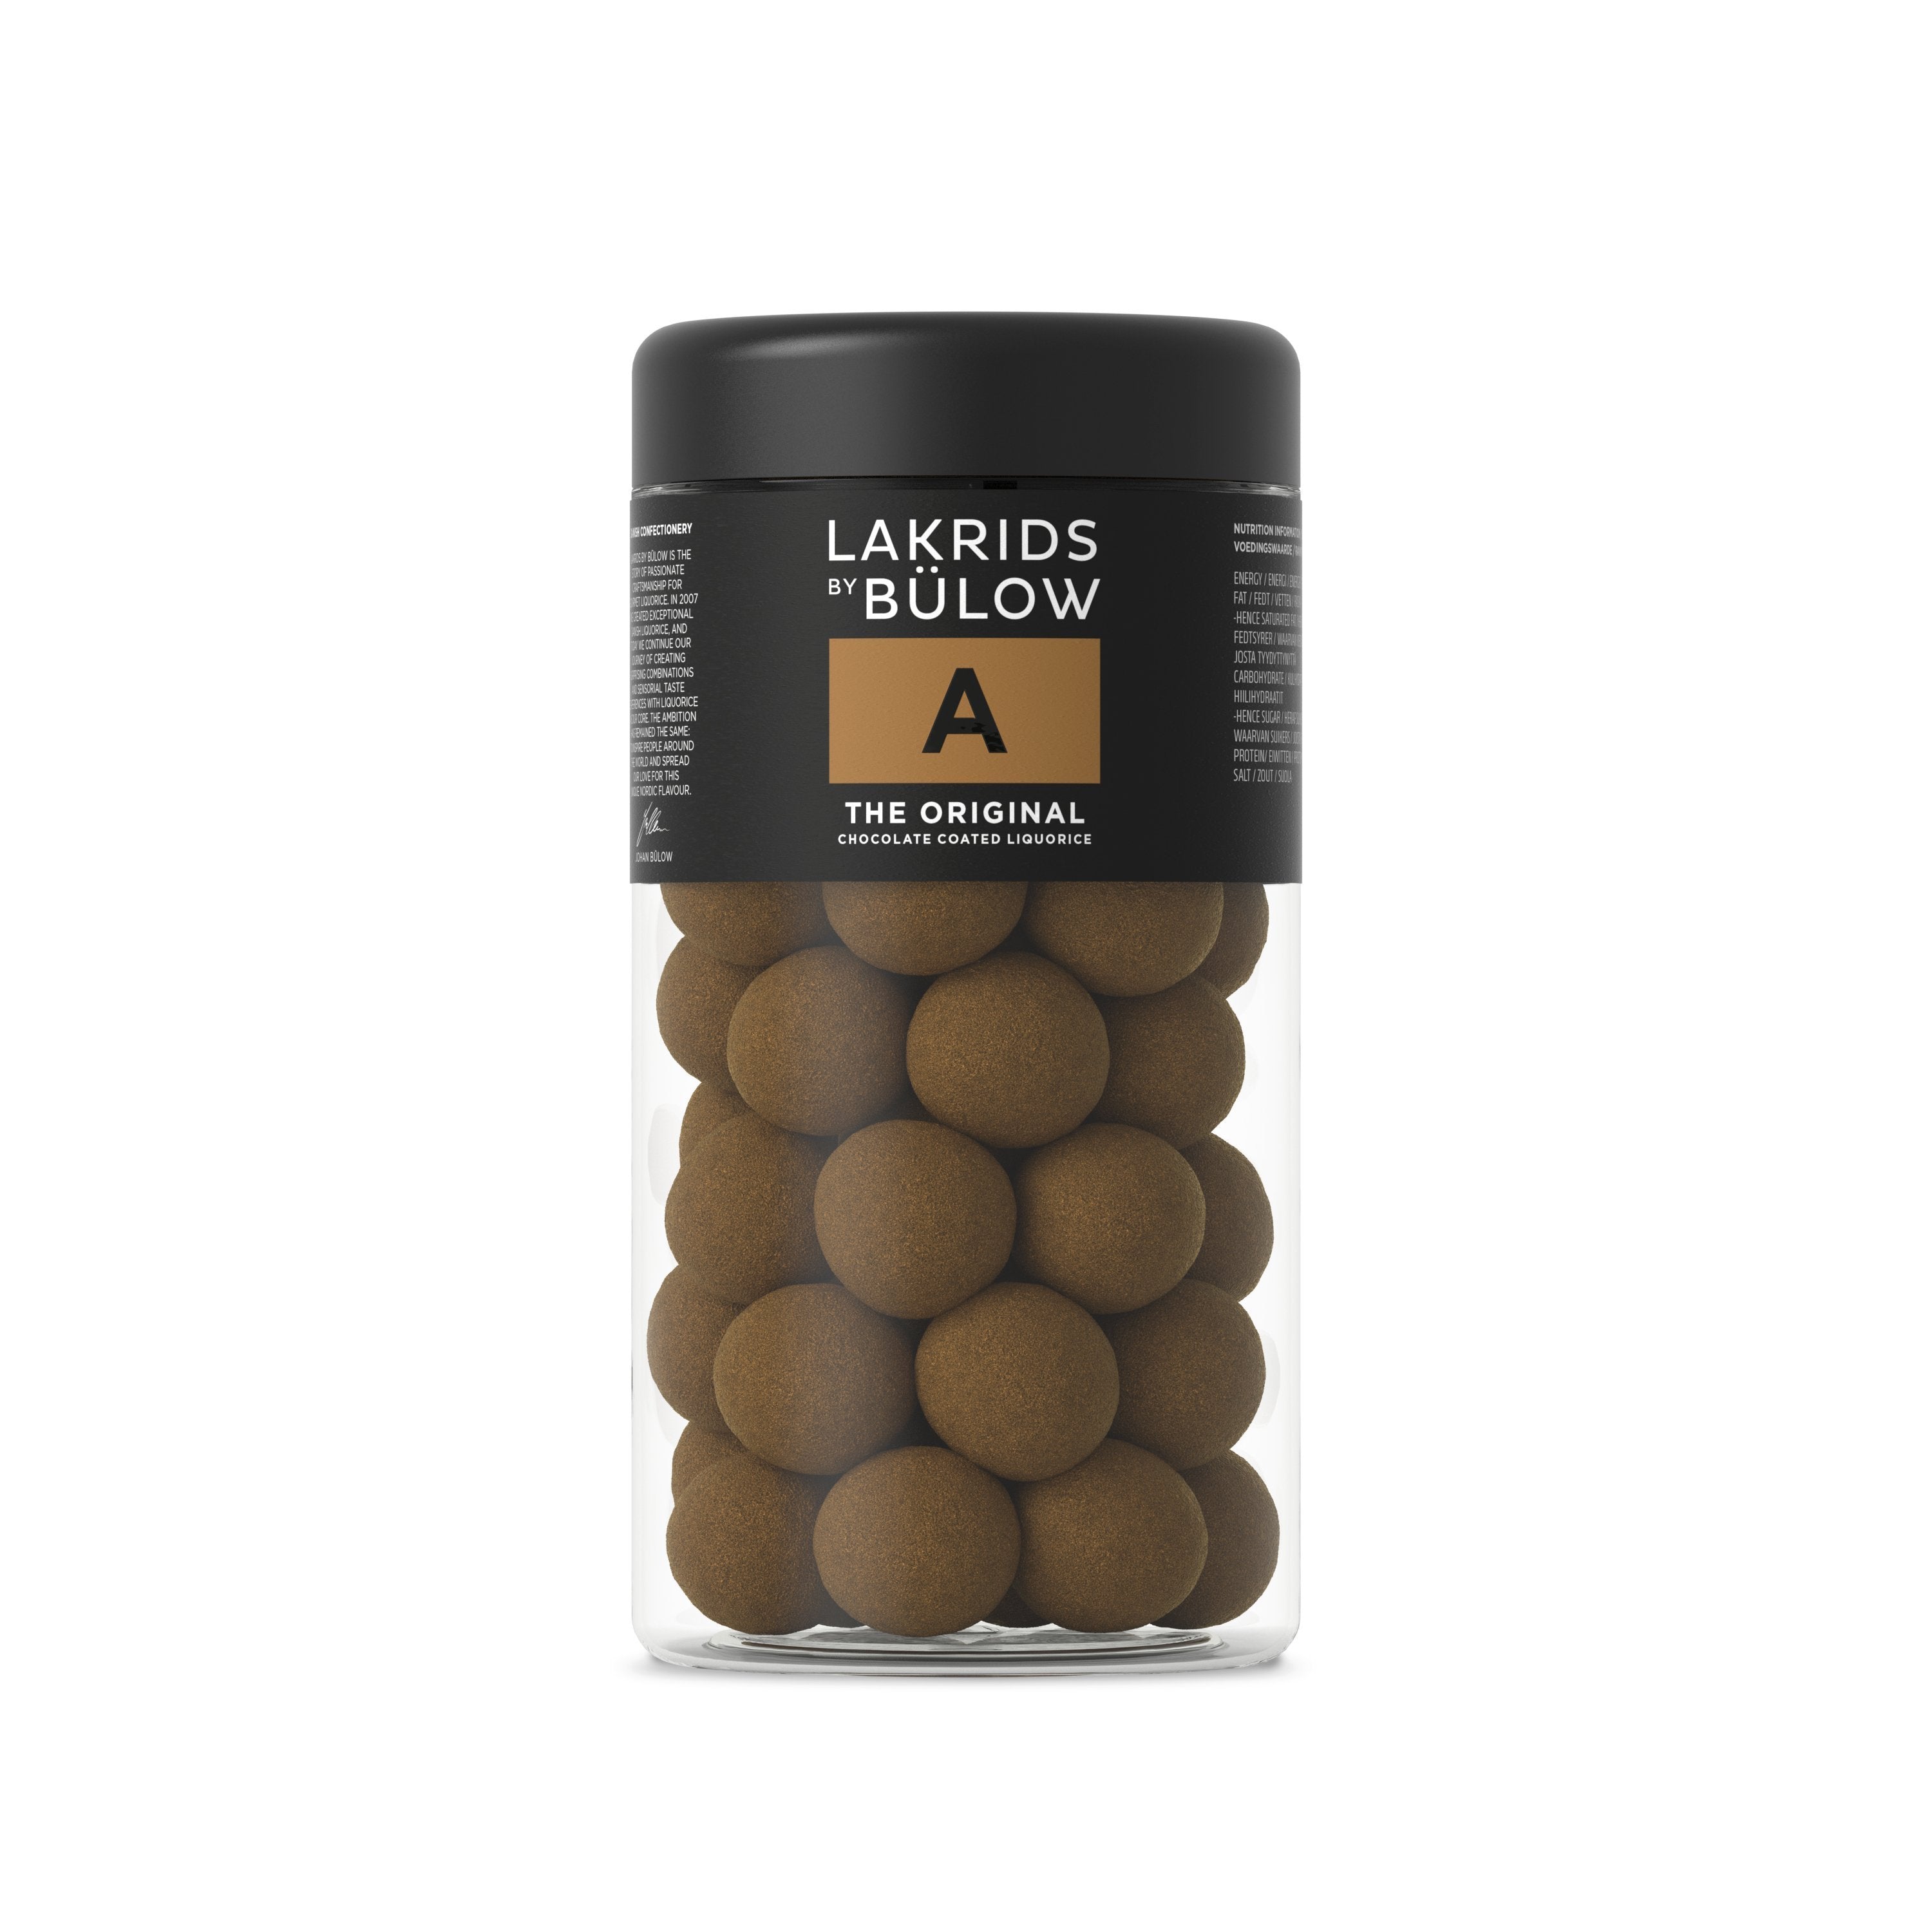 Lakrids by Bülow Black Box – A & 2, 415 Gram